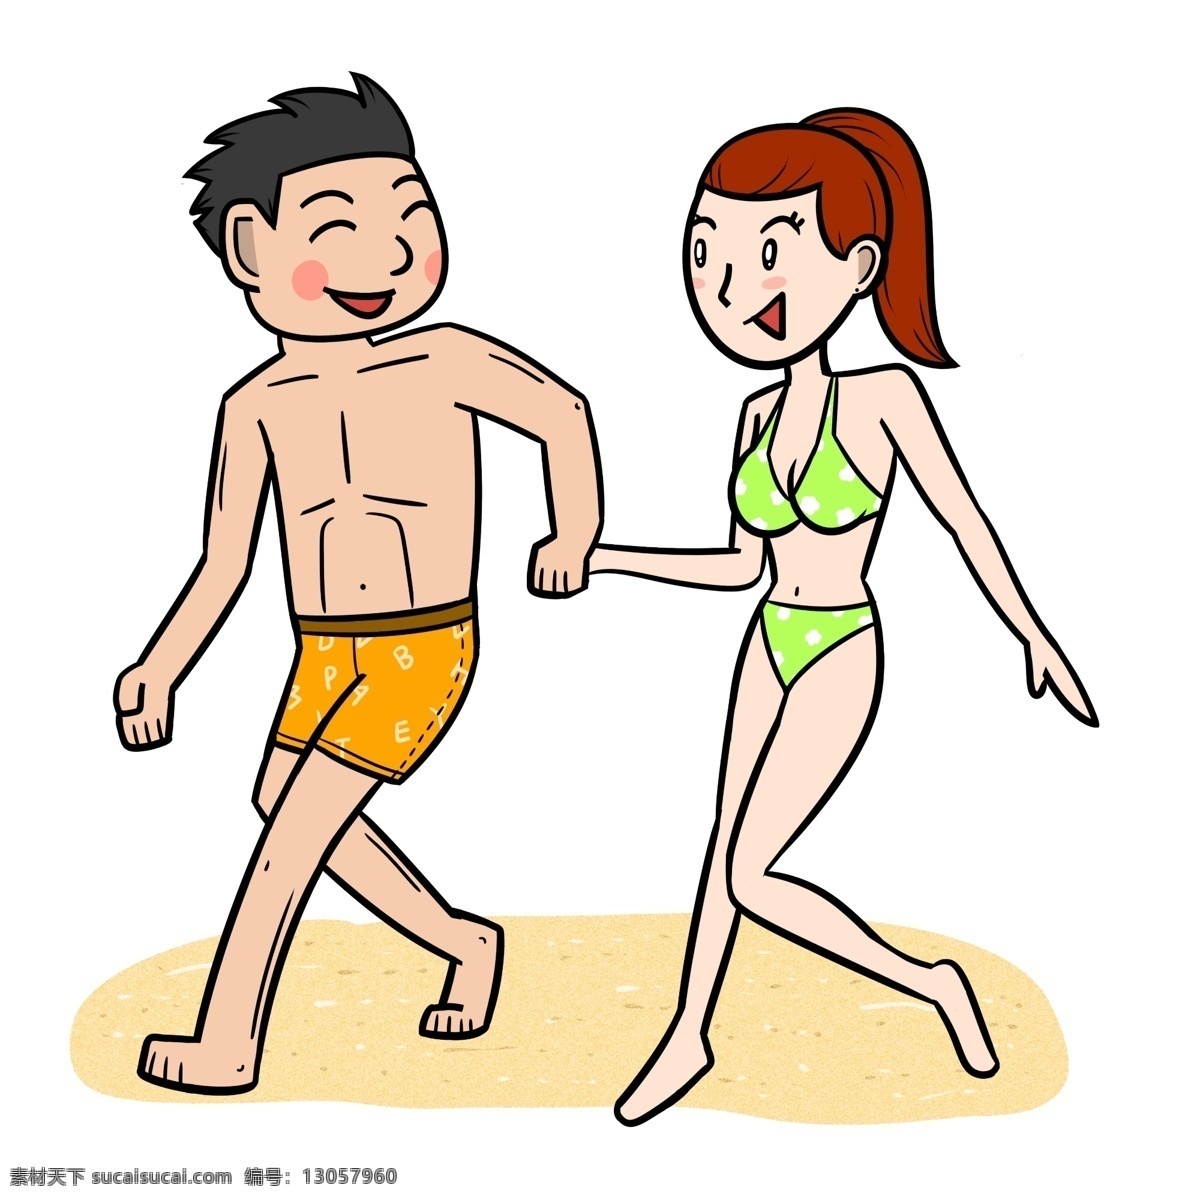 卡通 夏季 情侣 沙滩 跑 闹 透明 底 夏天 玩耍 海边 海滩 海边人物 夏季人物 夏天人物 卡通人物 卡通夏季